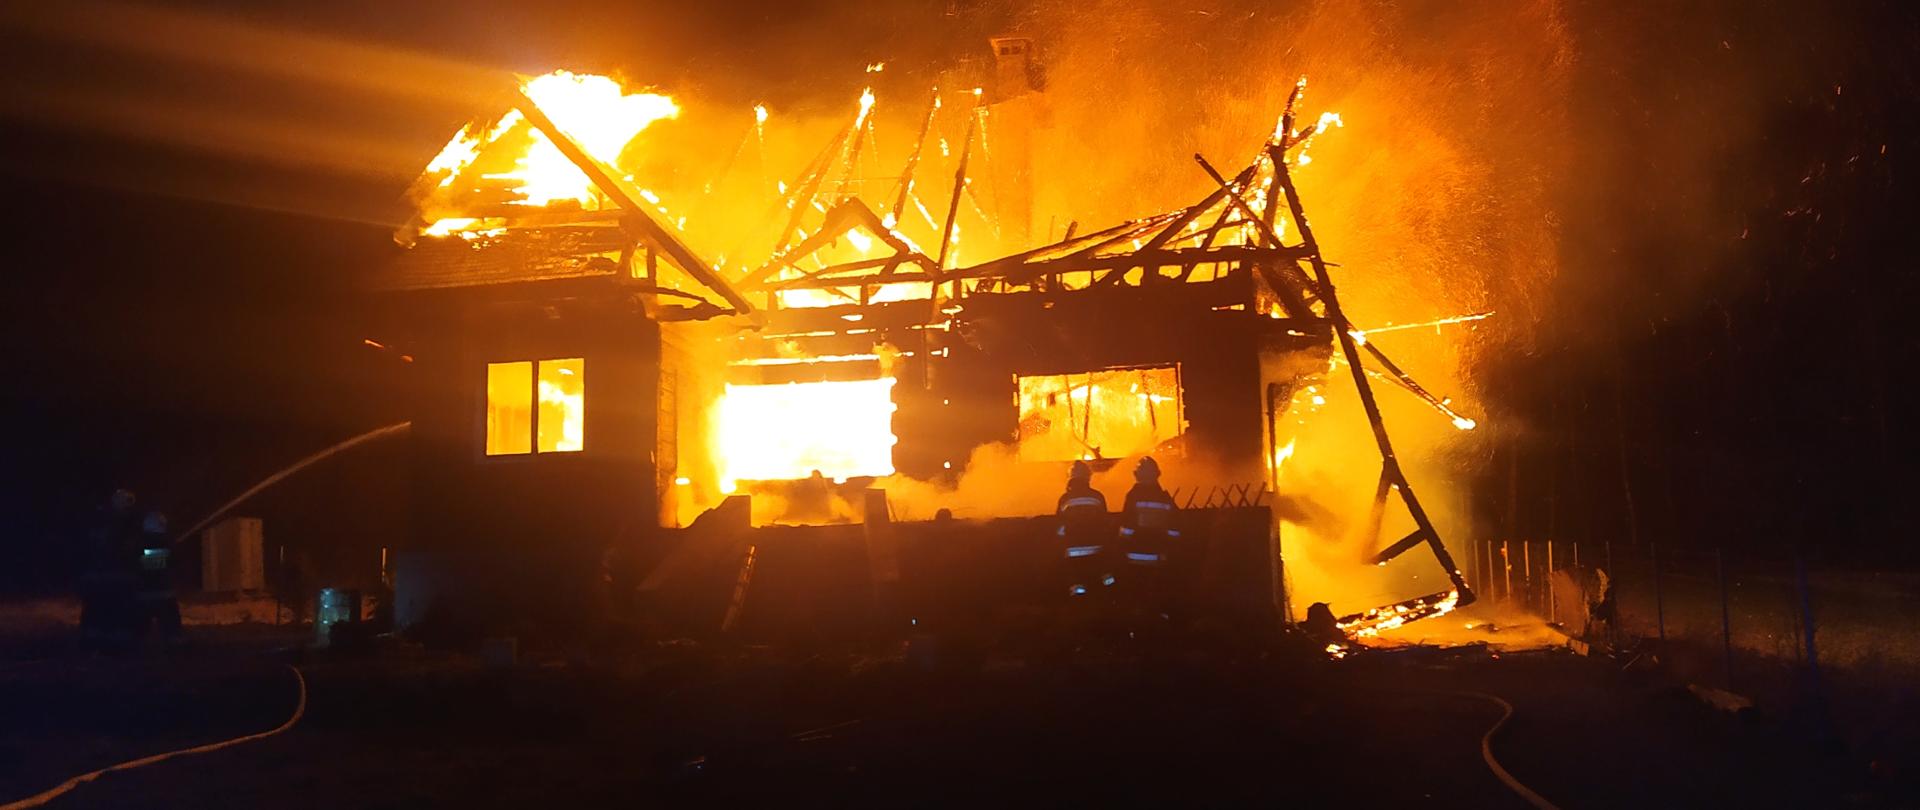 Zdjęcie przedstawia budynek objęty w całości ogniem. Wokół domu widnieje żółta poświata. Na tle płomieni można zauważyć resztki więźby dachowej. Widać również strażaków gaszących pożar.